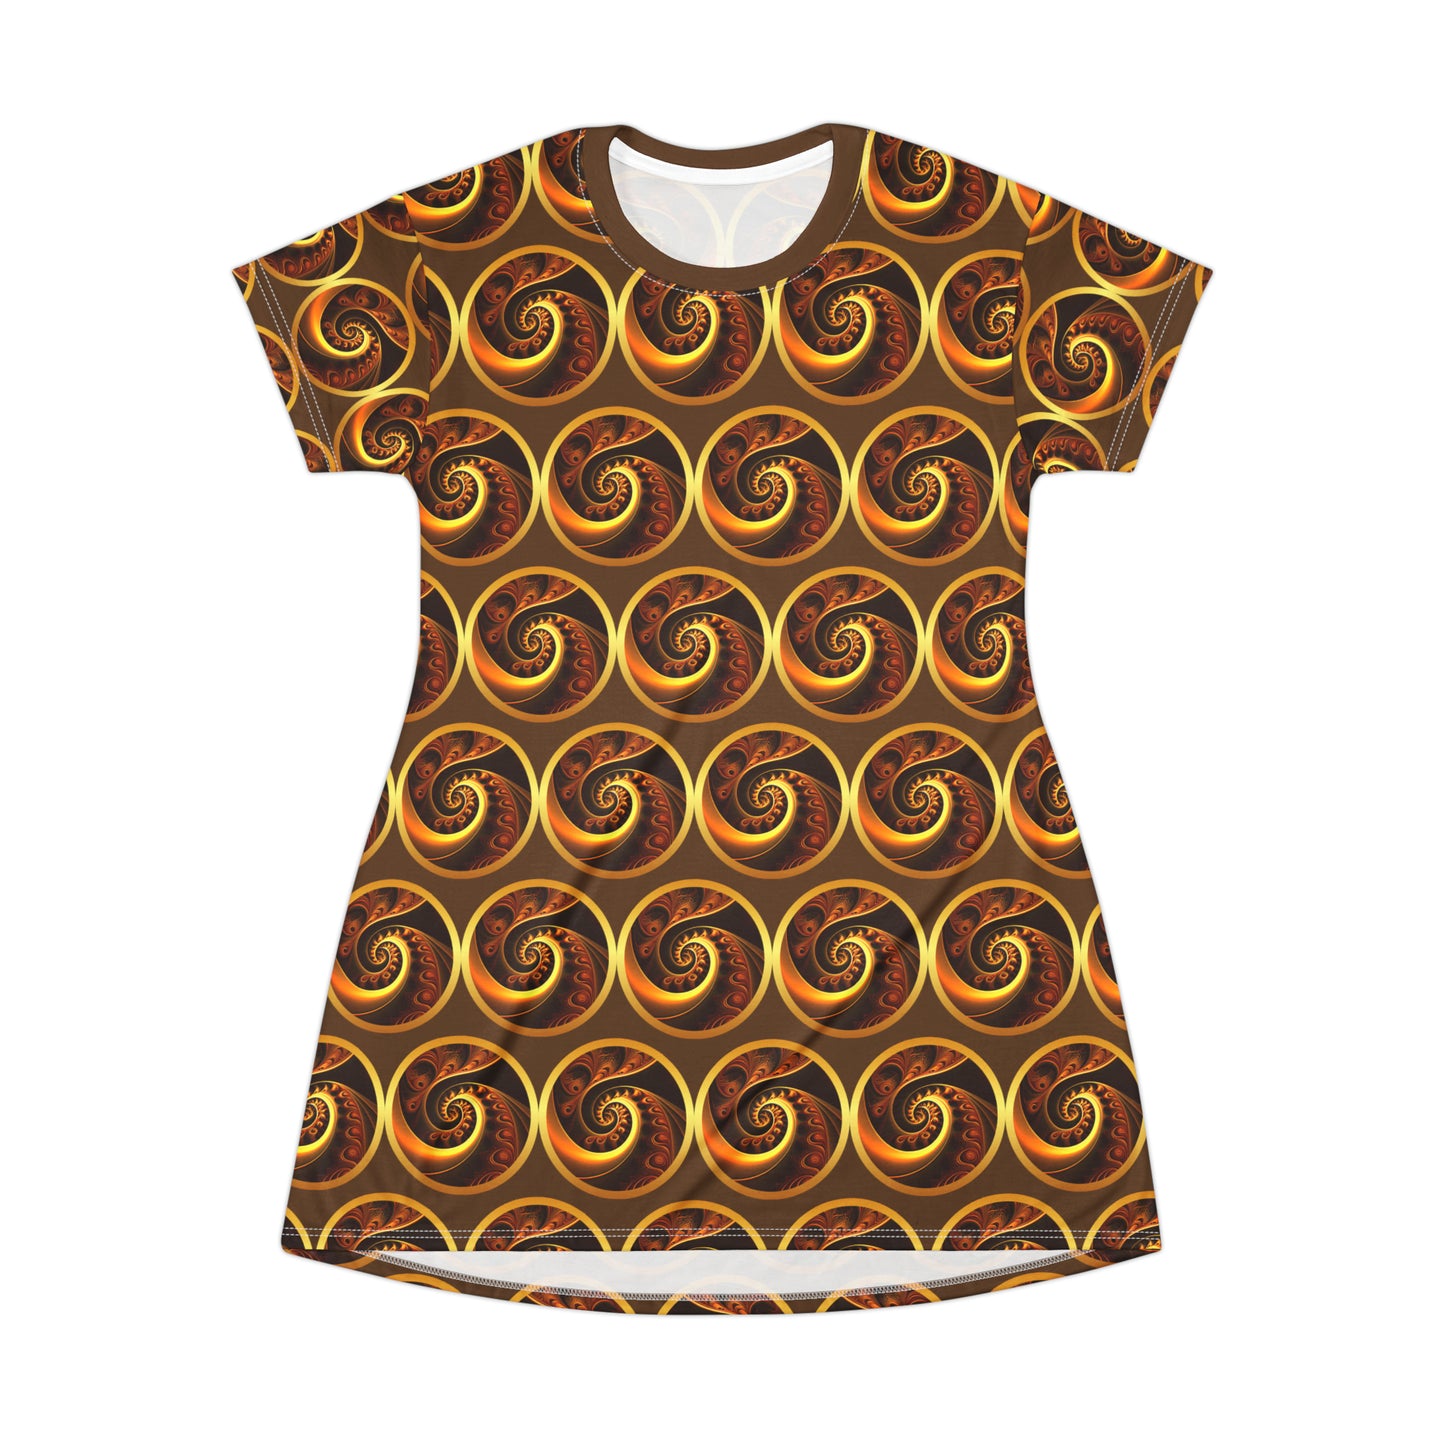 Gold Swirl T-Shirt Dress (AOP)